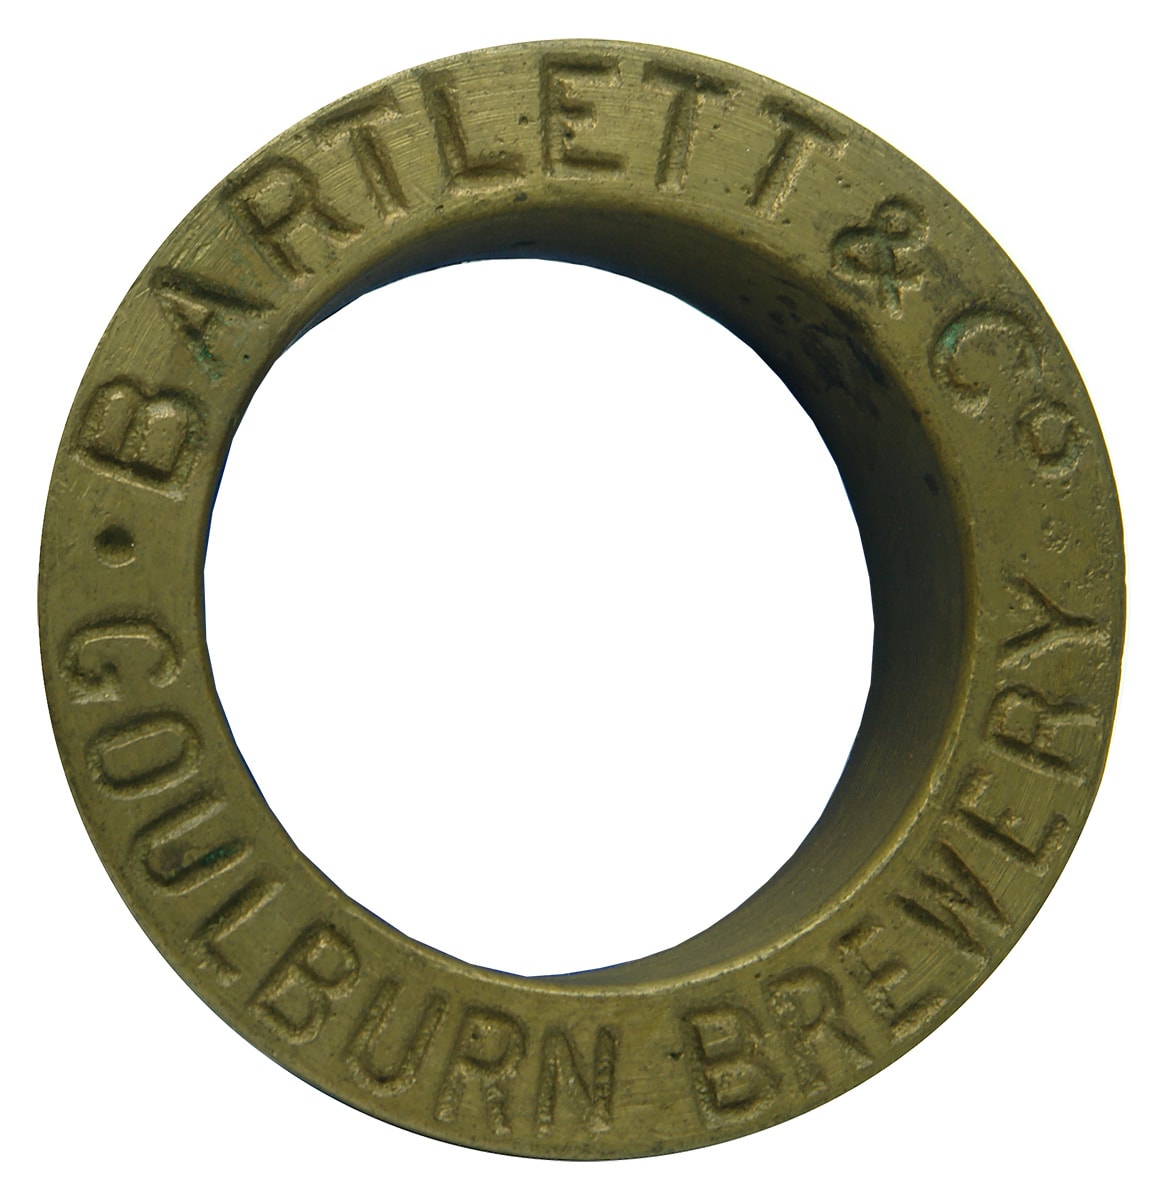 Bartlett Goulburn Brewery Brass Barrel Bung